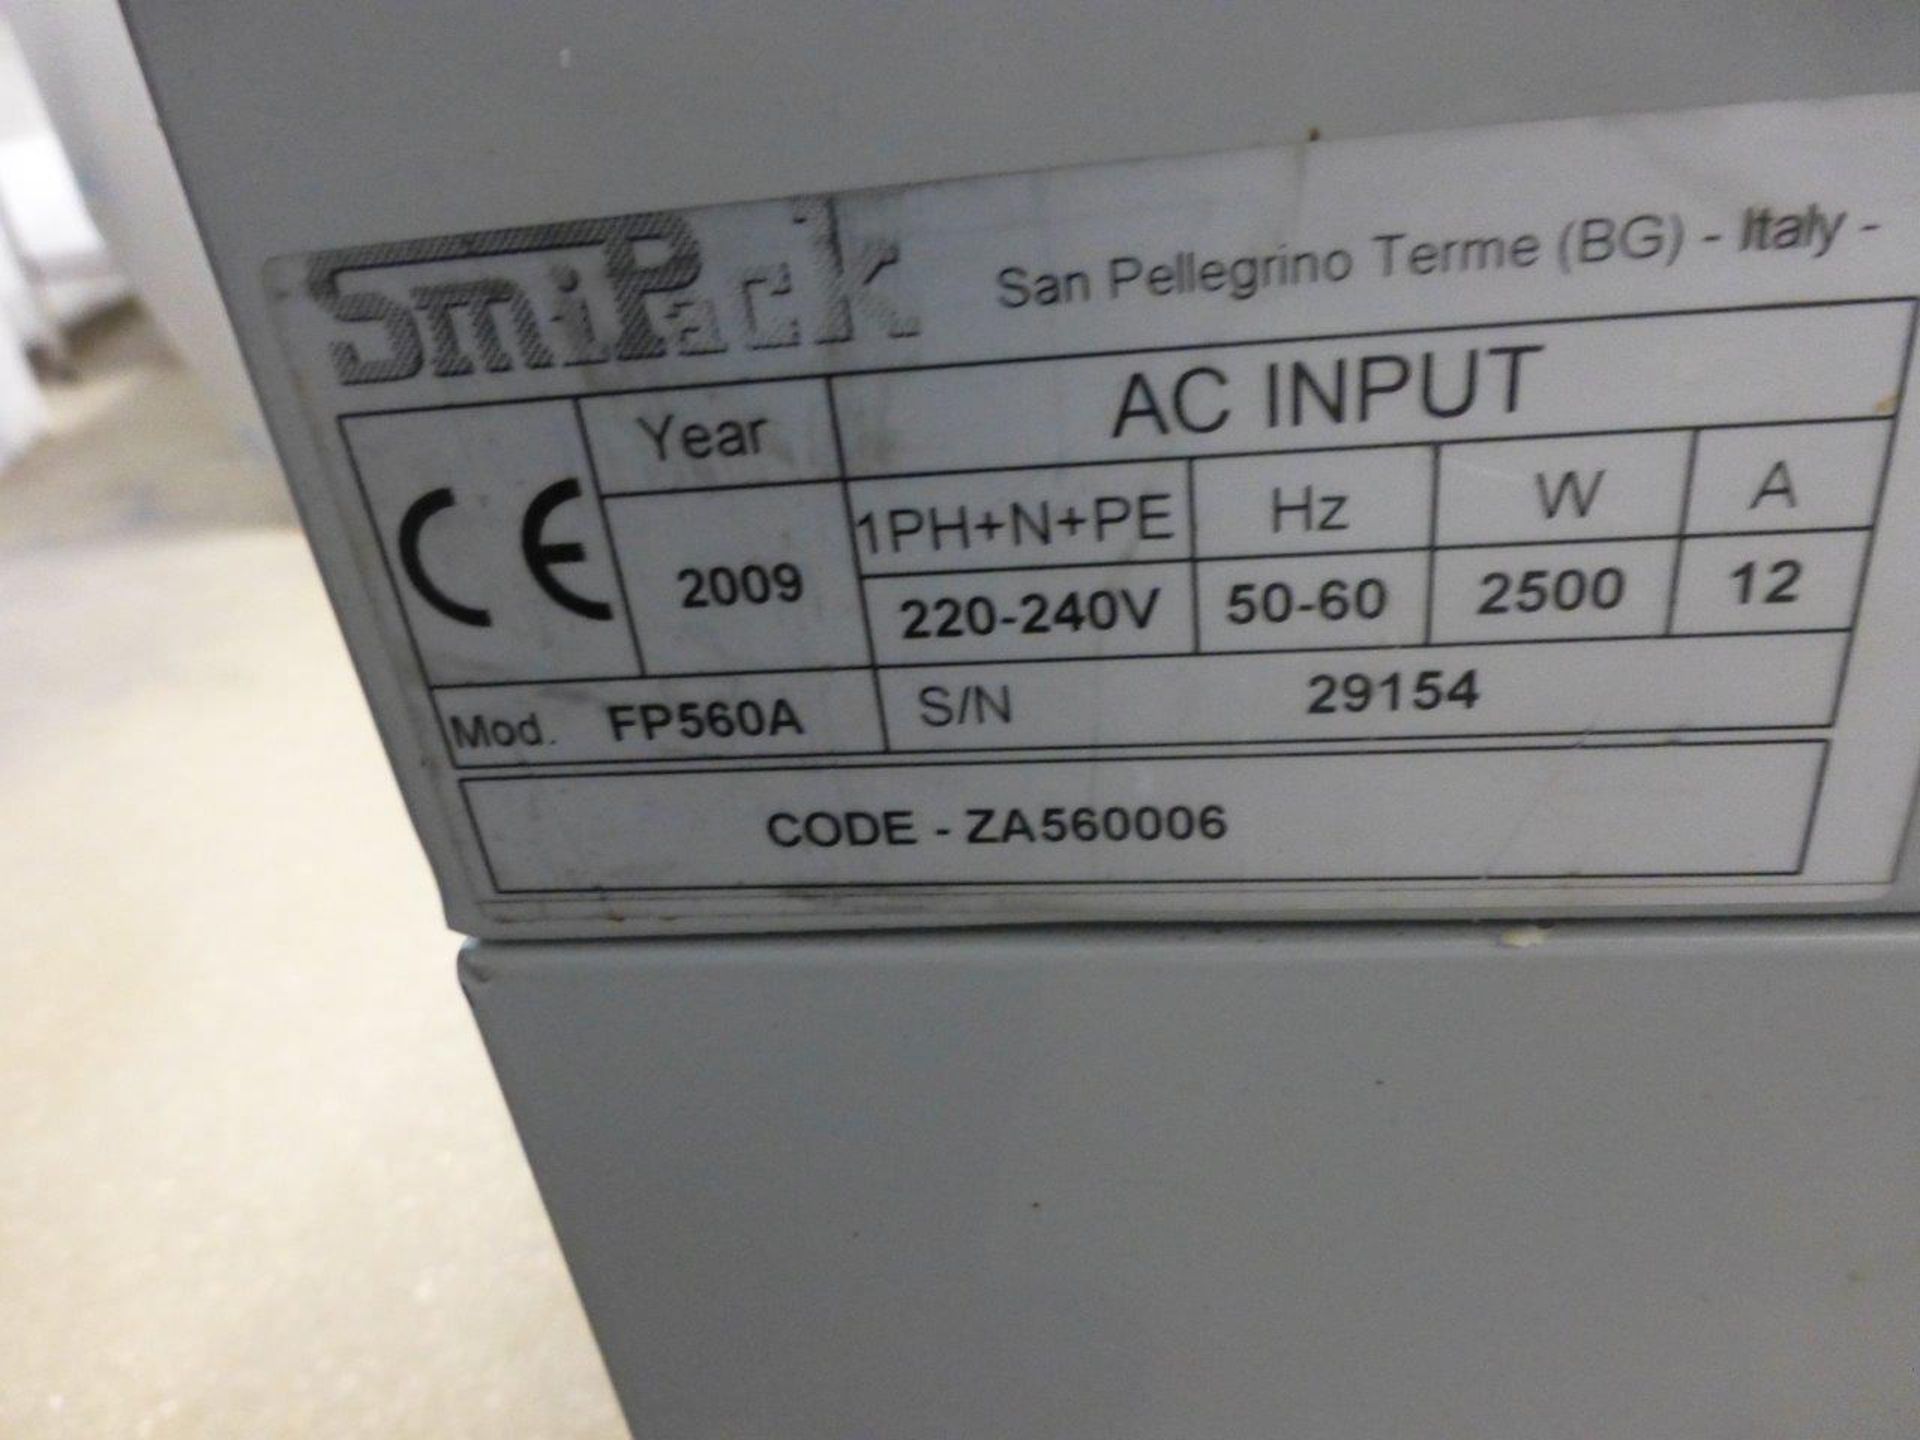 ADPAK SmiPack model FP560A L sealer (2009), Serial no. 29154 - Image 2 of 2